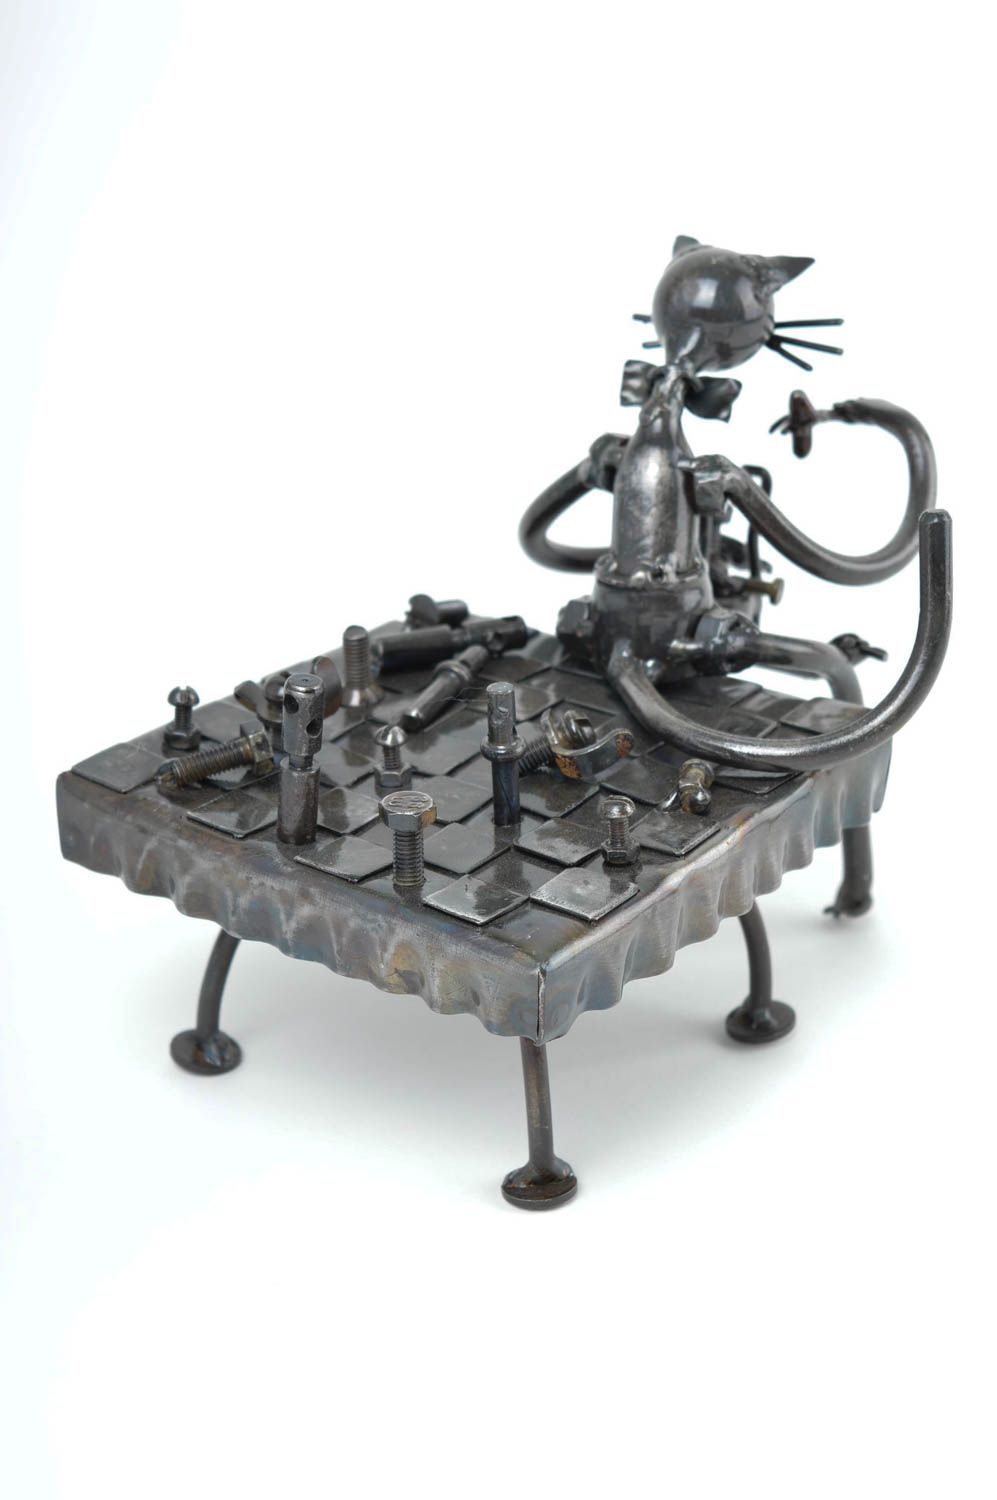 Unusual handmade metal figurine table decor ideas metal craft decorative use photo 4